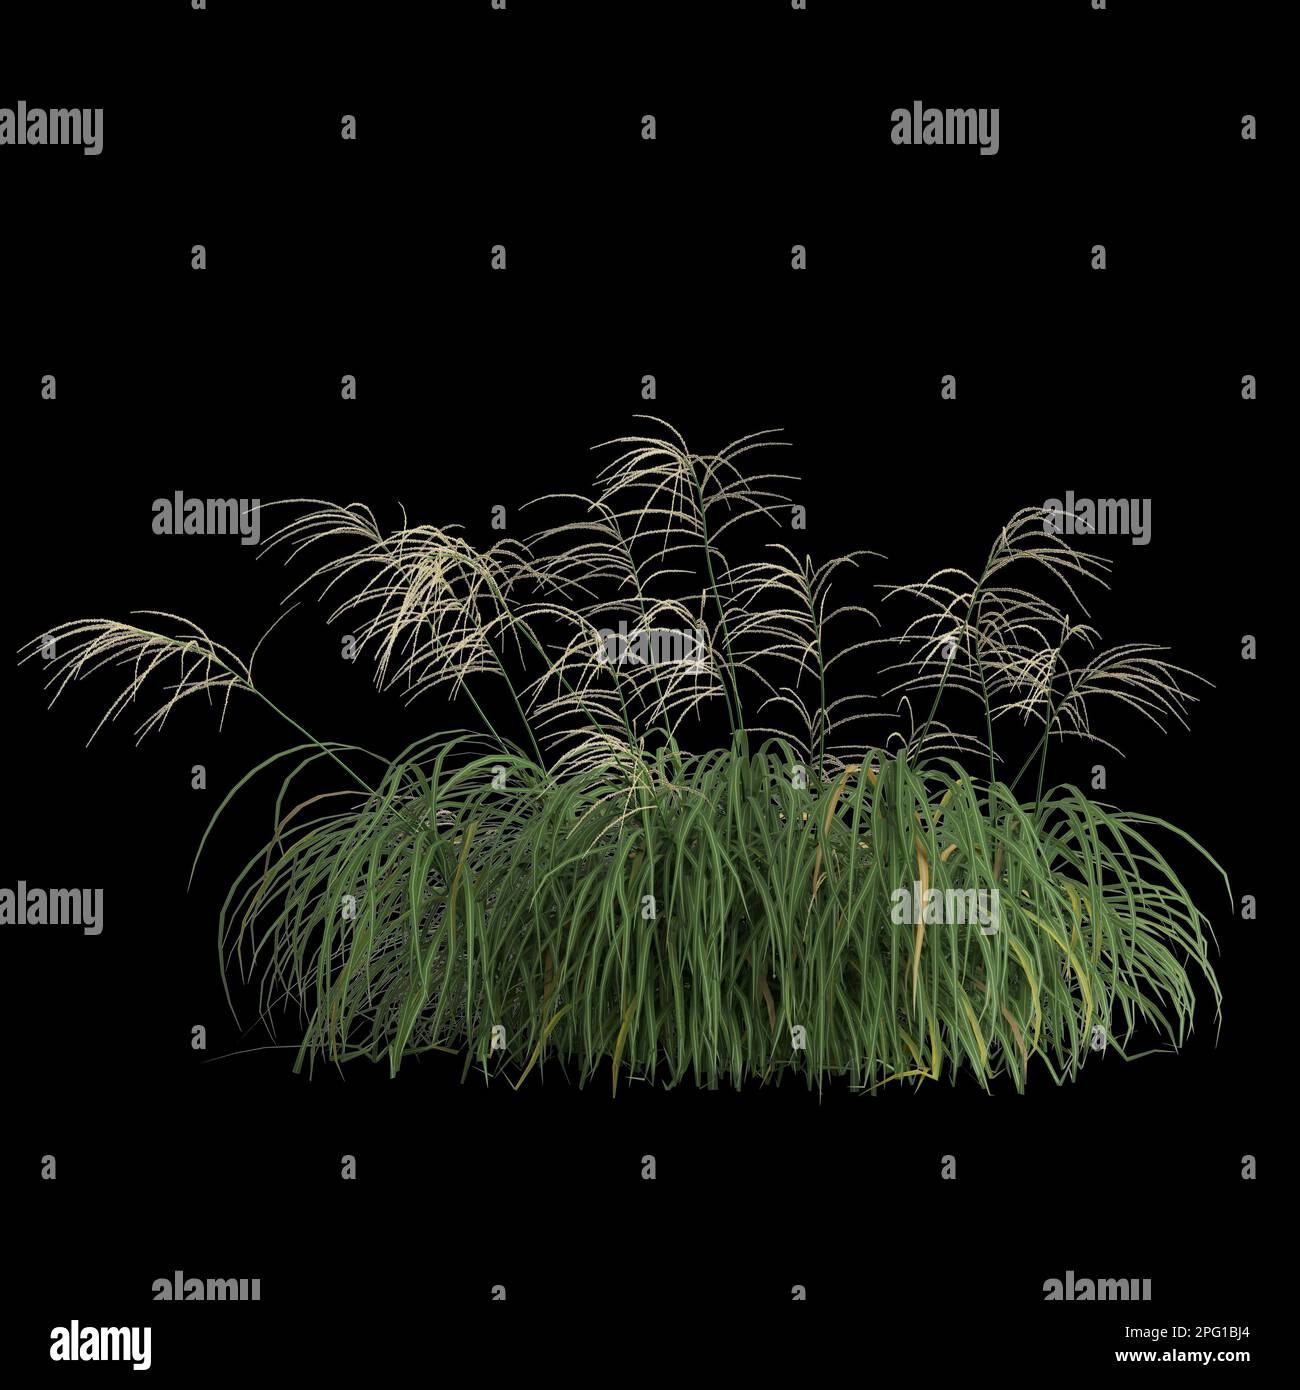 3d illustration of miscanthus bush isolated on black background Stock Photo